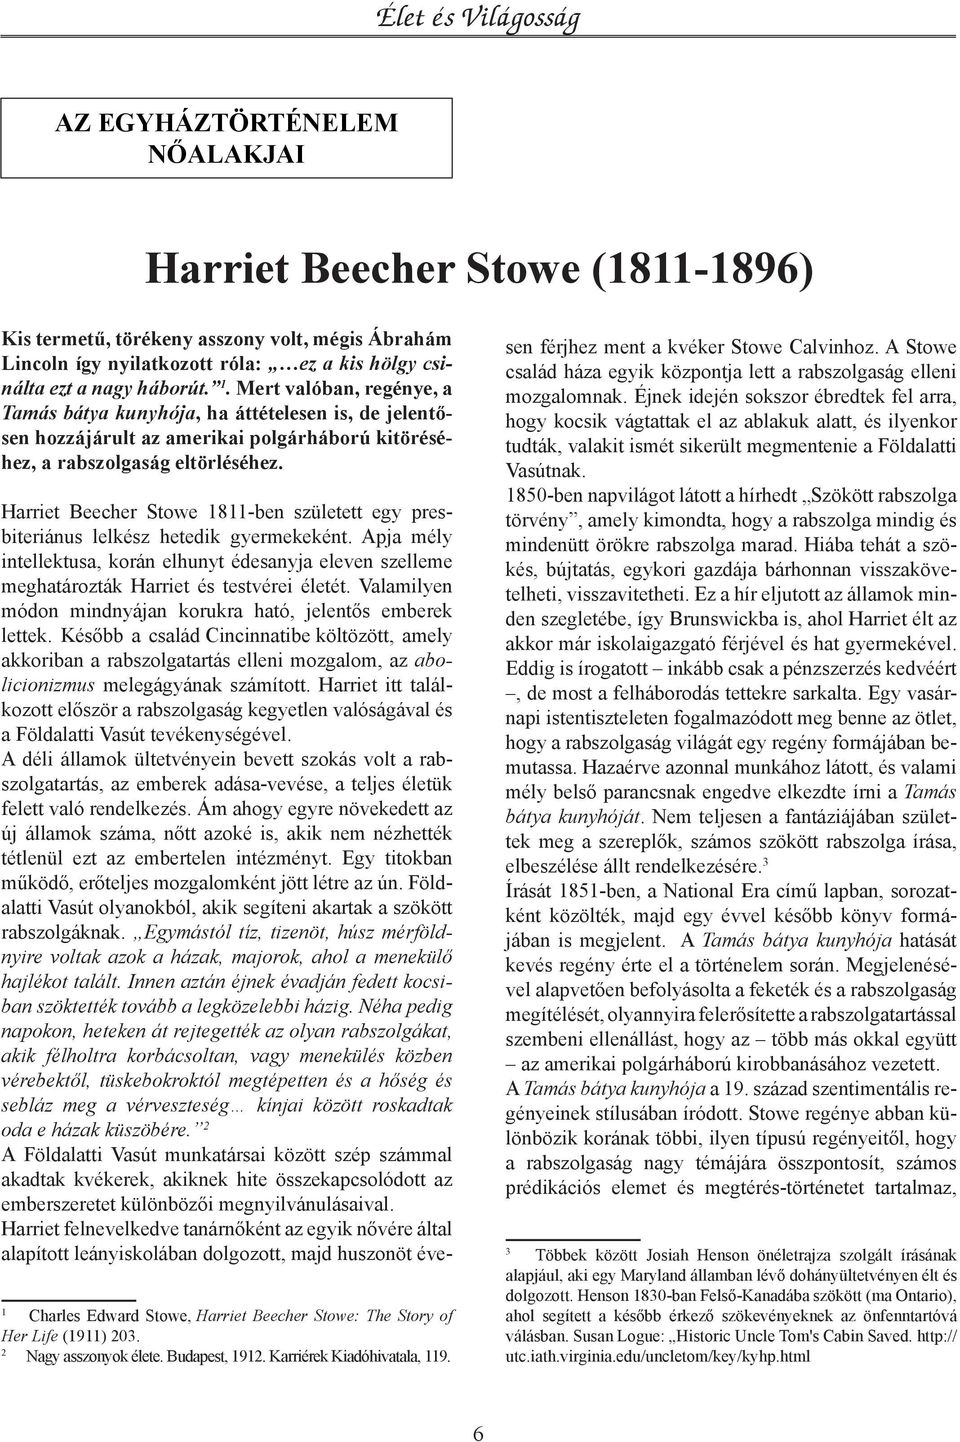 Harriet Beecher Stowe 1811-ben született egy presbiteriánus lelkész hetedik gyermekeként. Apja mély intellektusa, korán elhunyt édesanyja eleven szelleme meghatározták Harriet és testvérei életét.